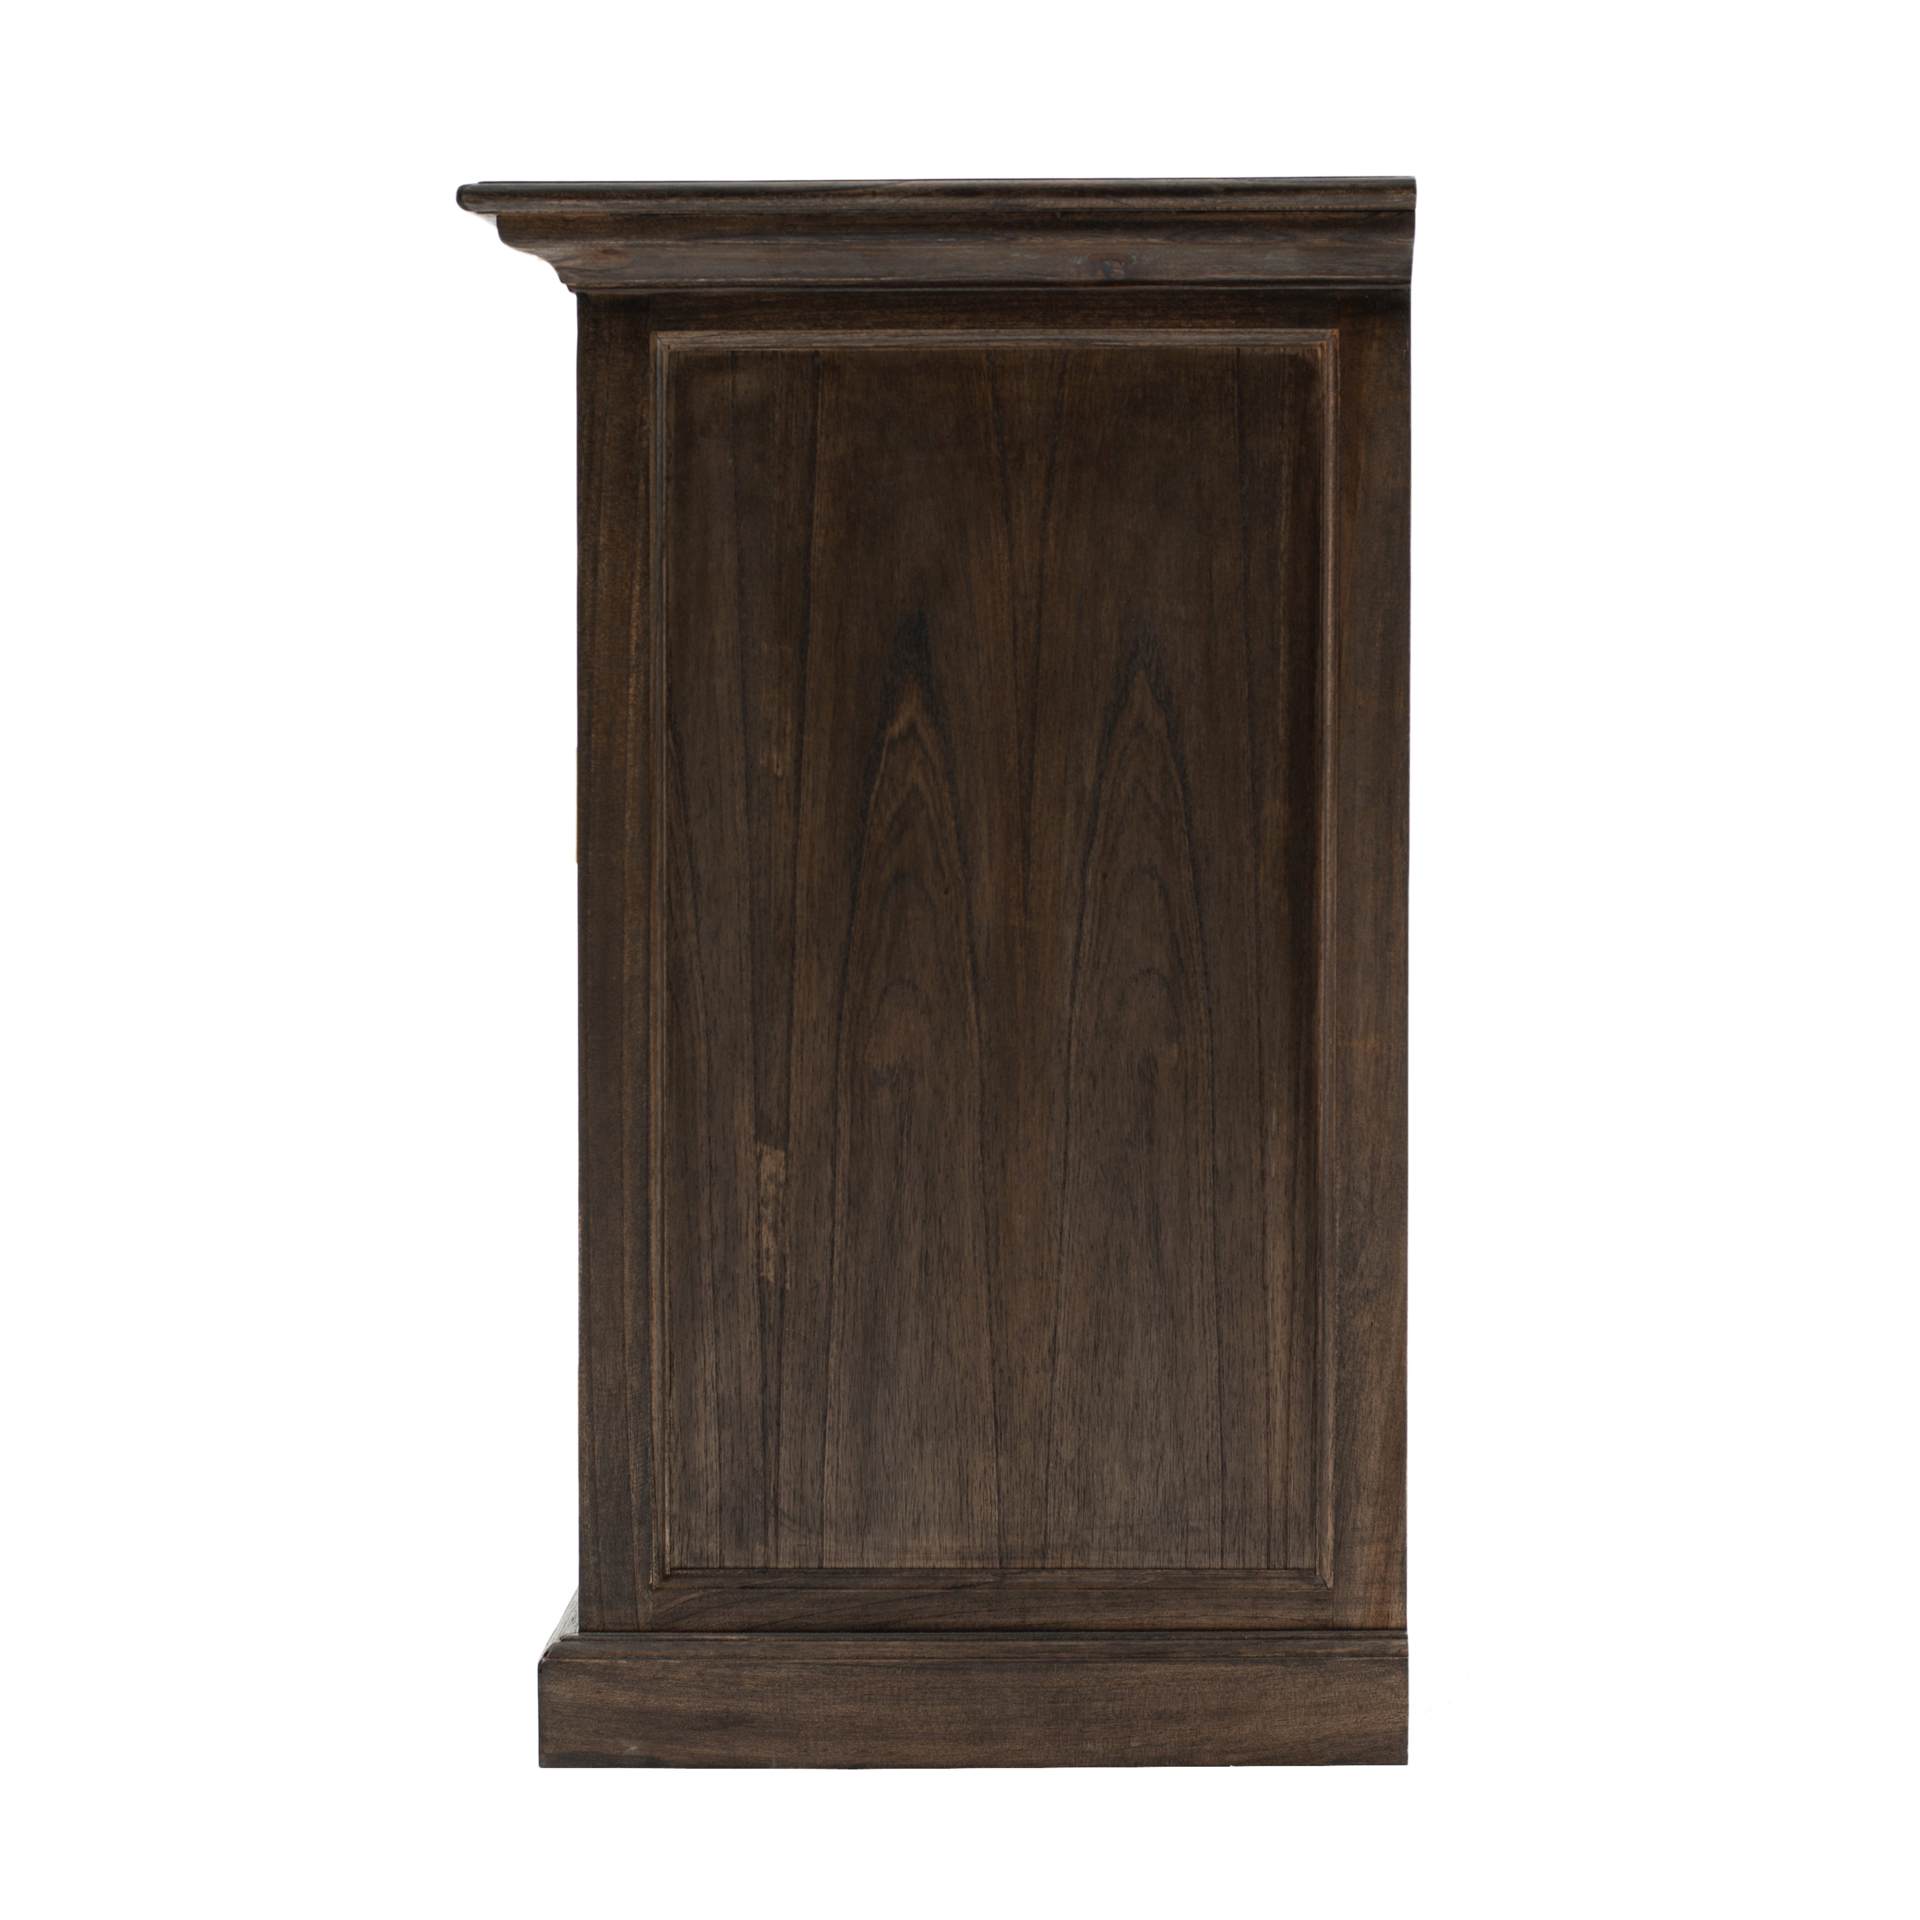 Das Sideboard Halifax Mindi überzeugt mit seinem Landhaus Stil. Gefertigt wurde es aus Mindi Holz, welches einen braunen Farbton besitzt. Das Sideboard verfügt über zwei Schubladen und vier Türen. Die Breite beträgt 145 cm.